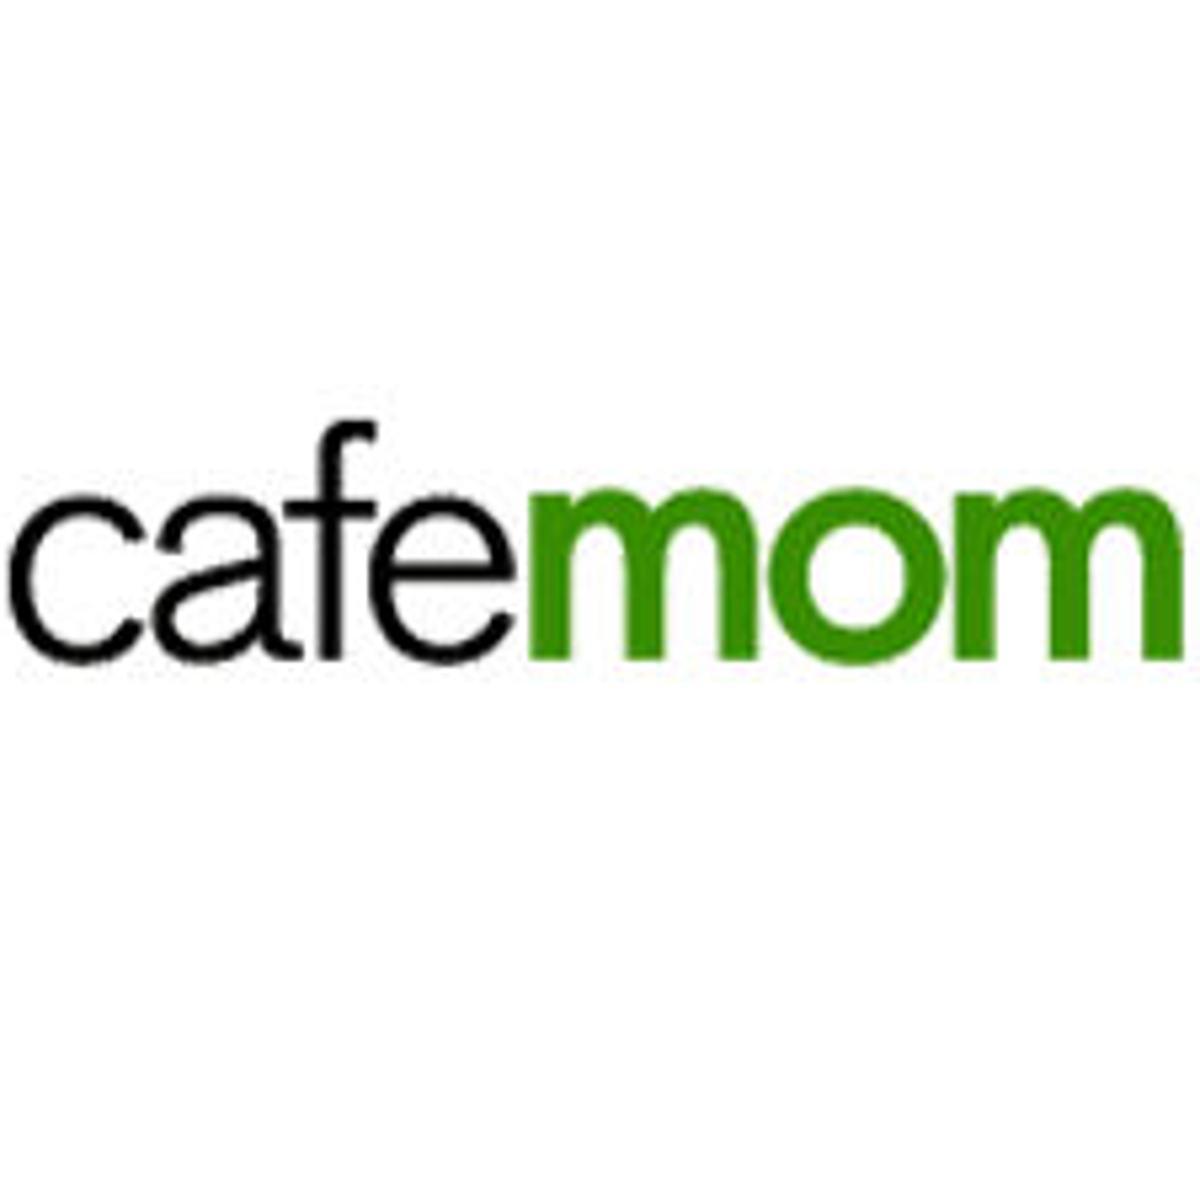 CafeMom Logo - Social networking for moms and moms-to-be | News | pilotonline.com